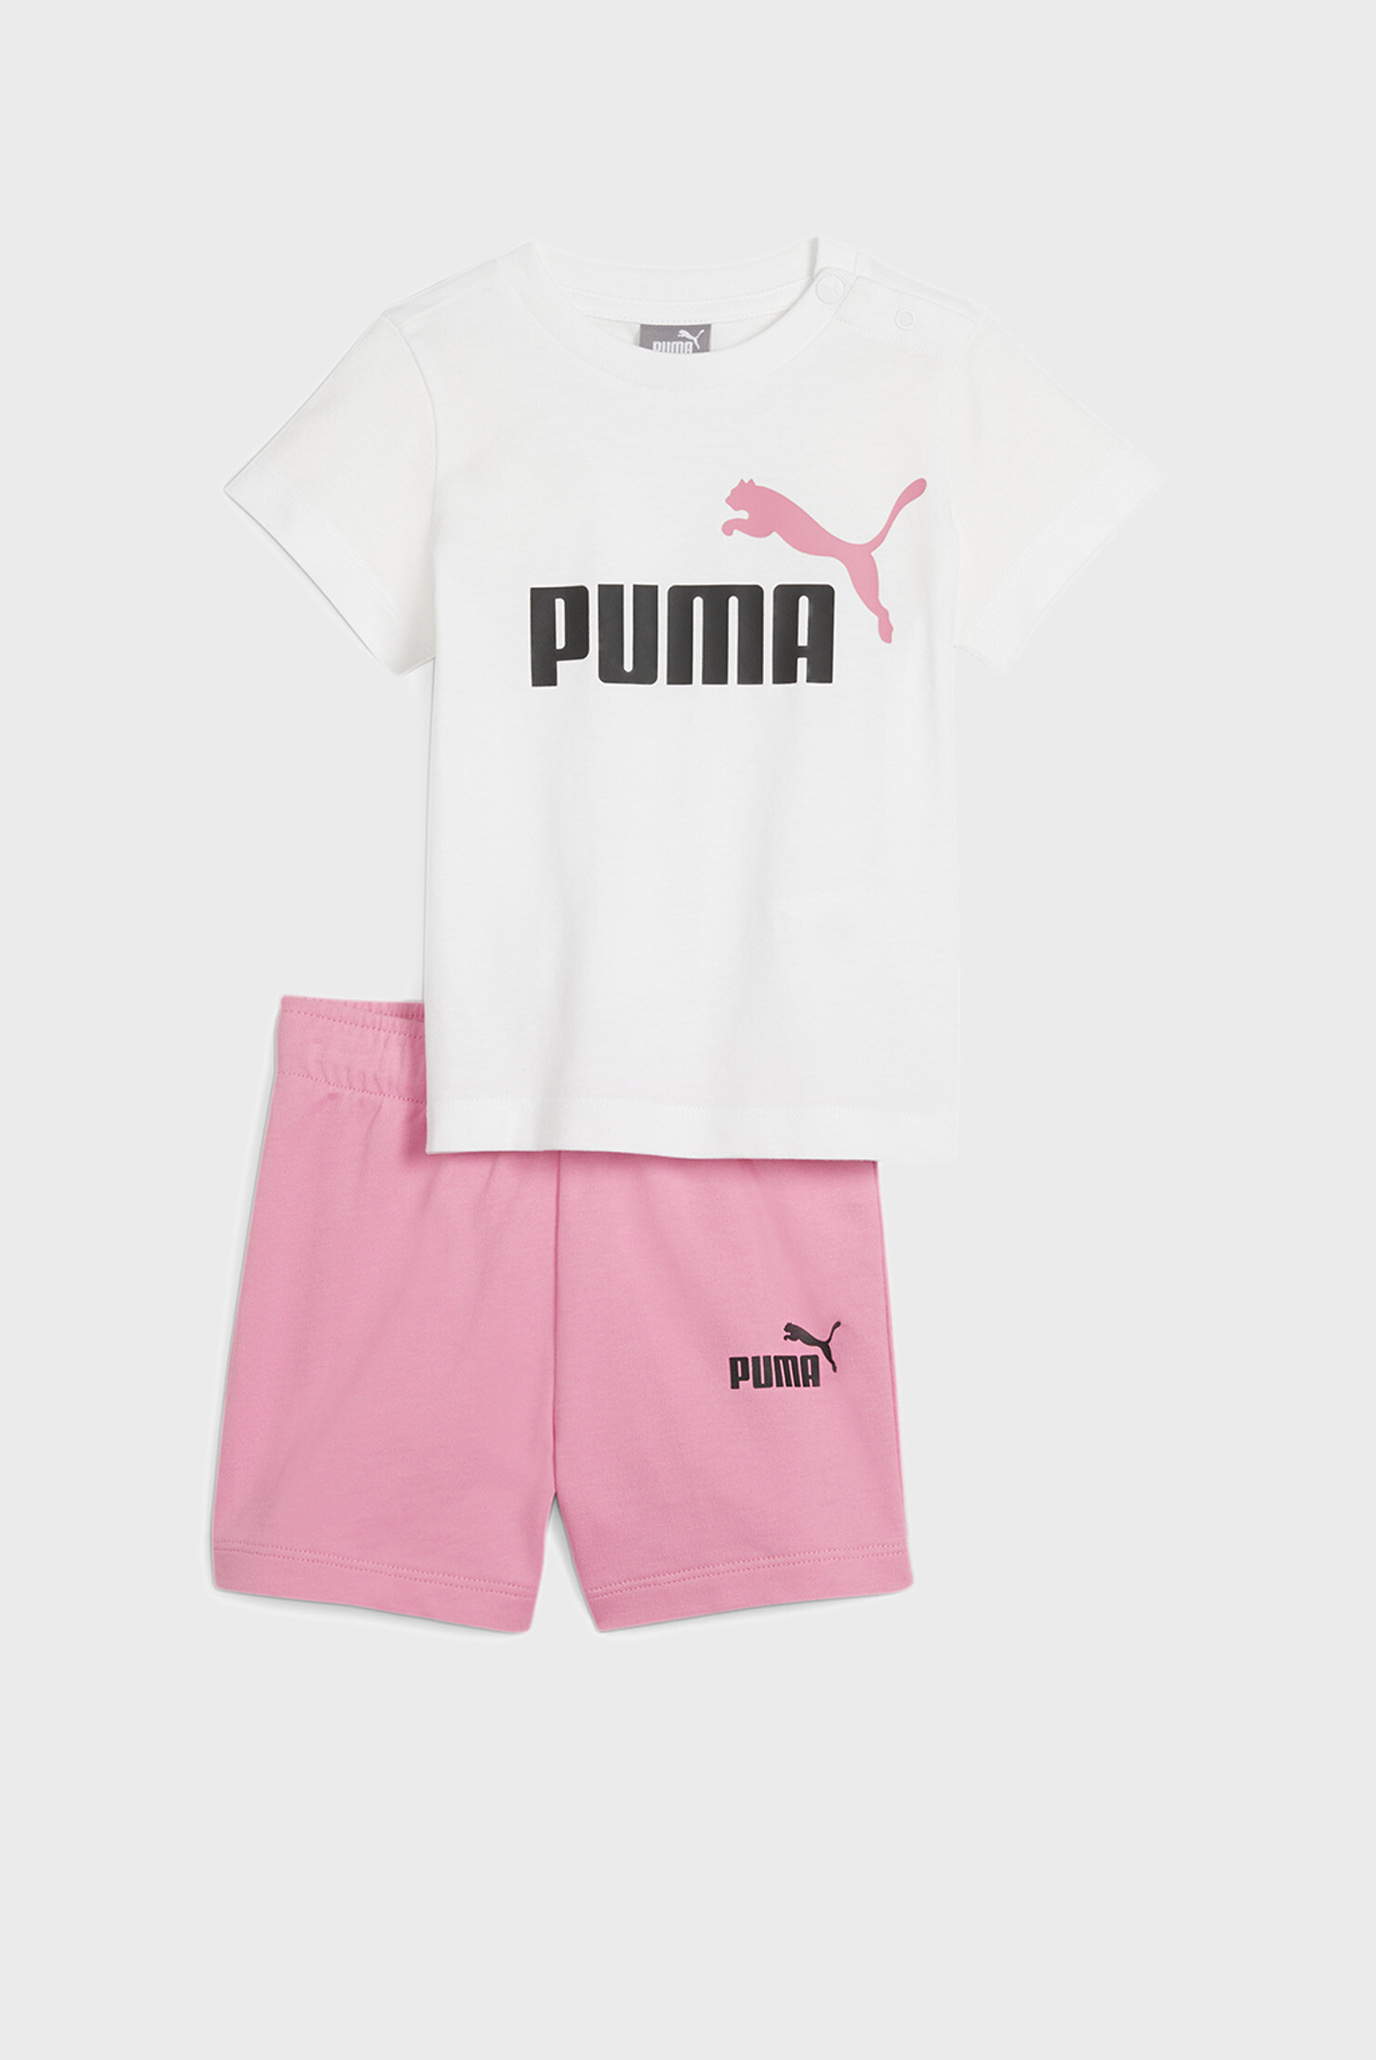 Детский комплект одежды (футболка, шорты) Minicats Tee and Shorts Babies' Set 1